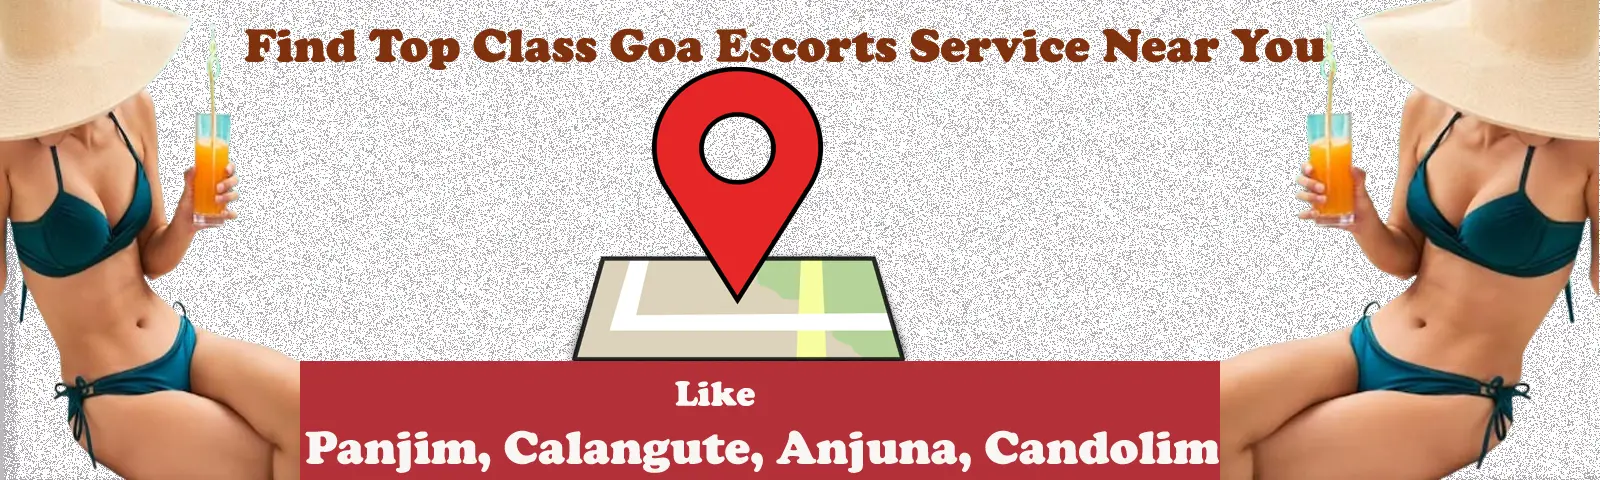 Escorts Services in Goa